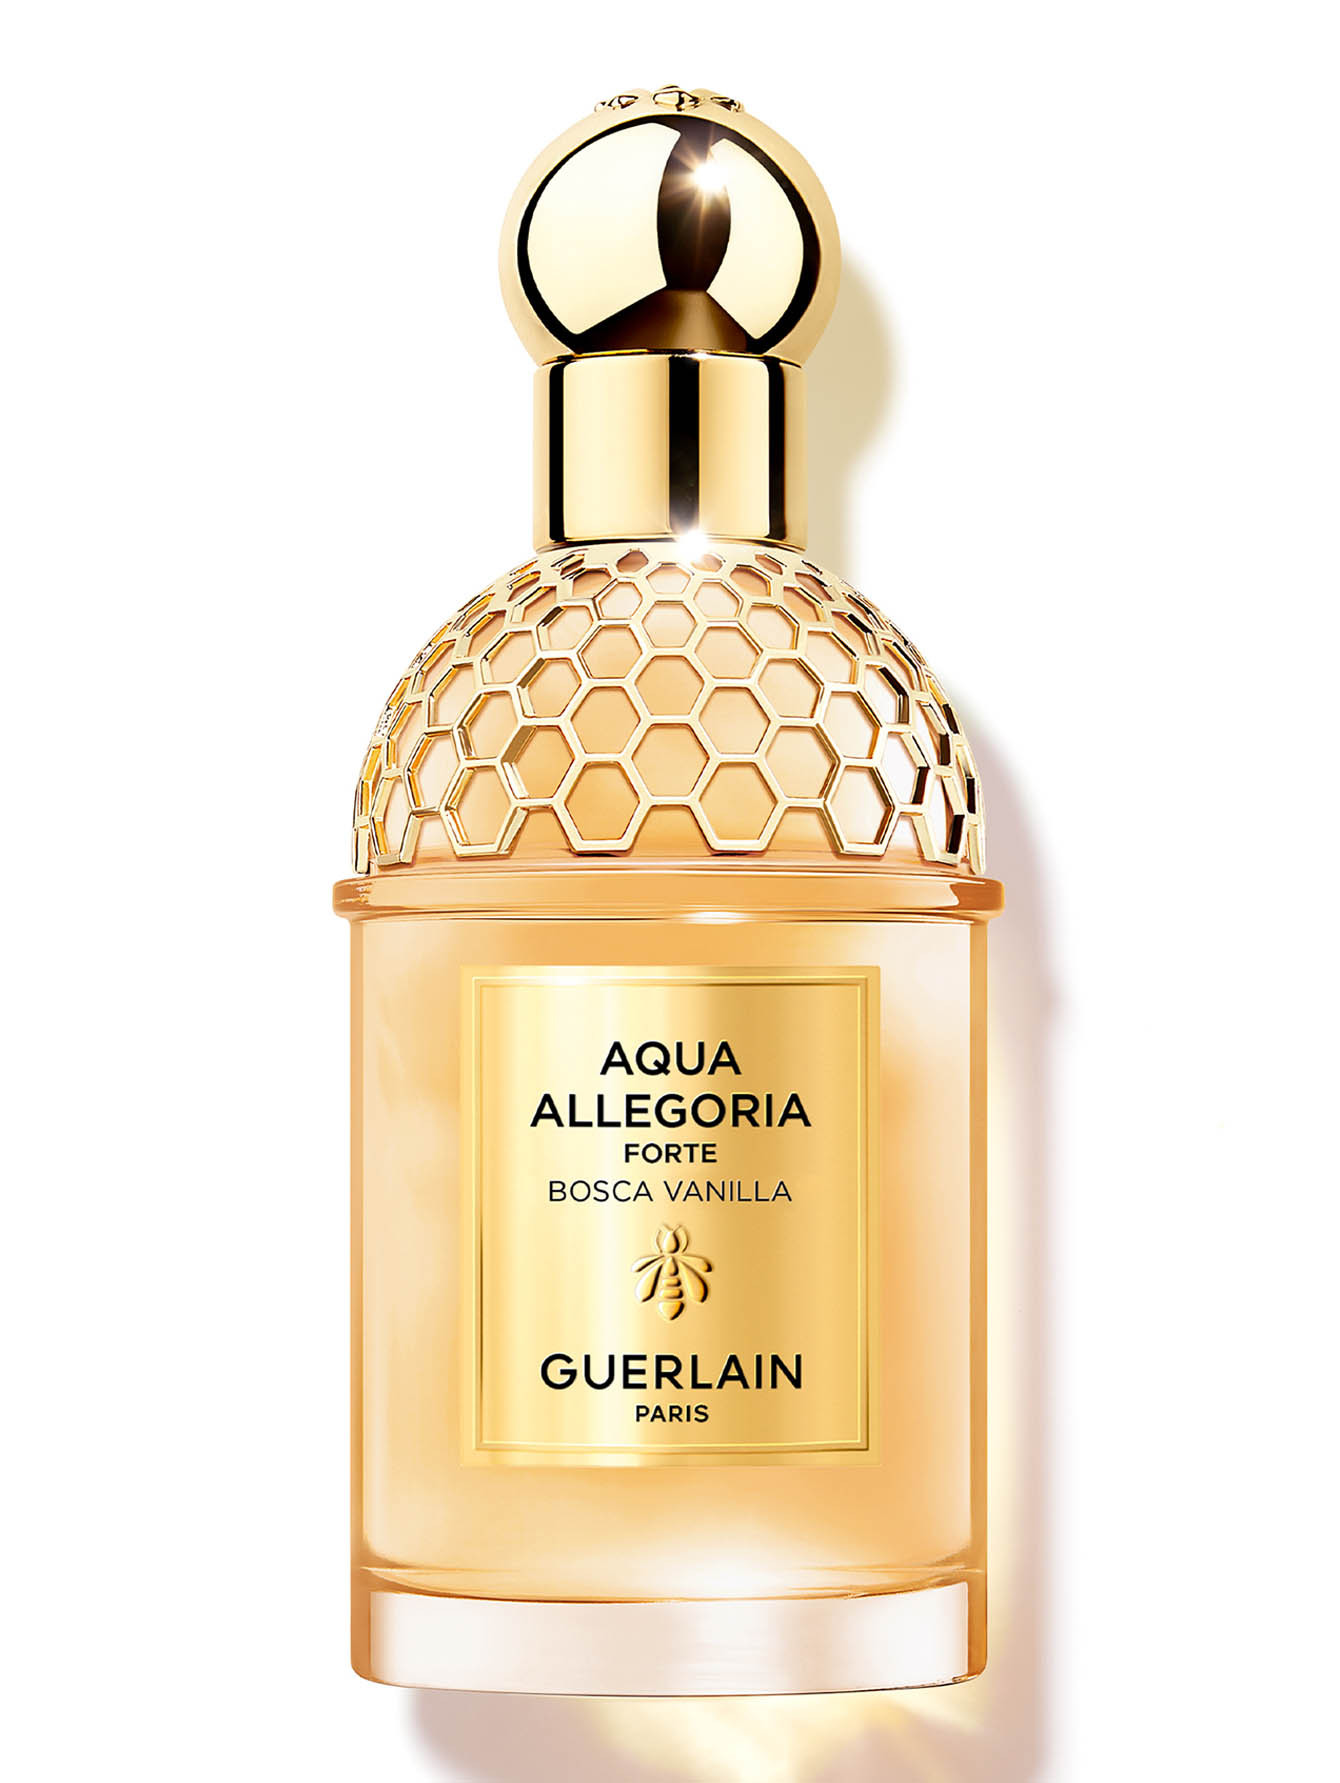 Парфюмерная вода Aqua Allegoria Forte Bosca Vanilla, 75 мл - Общий вид